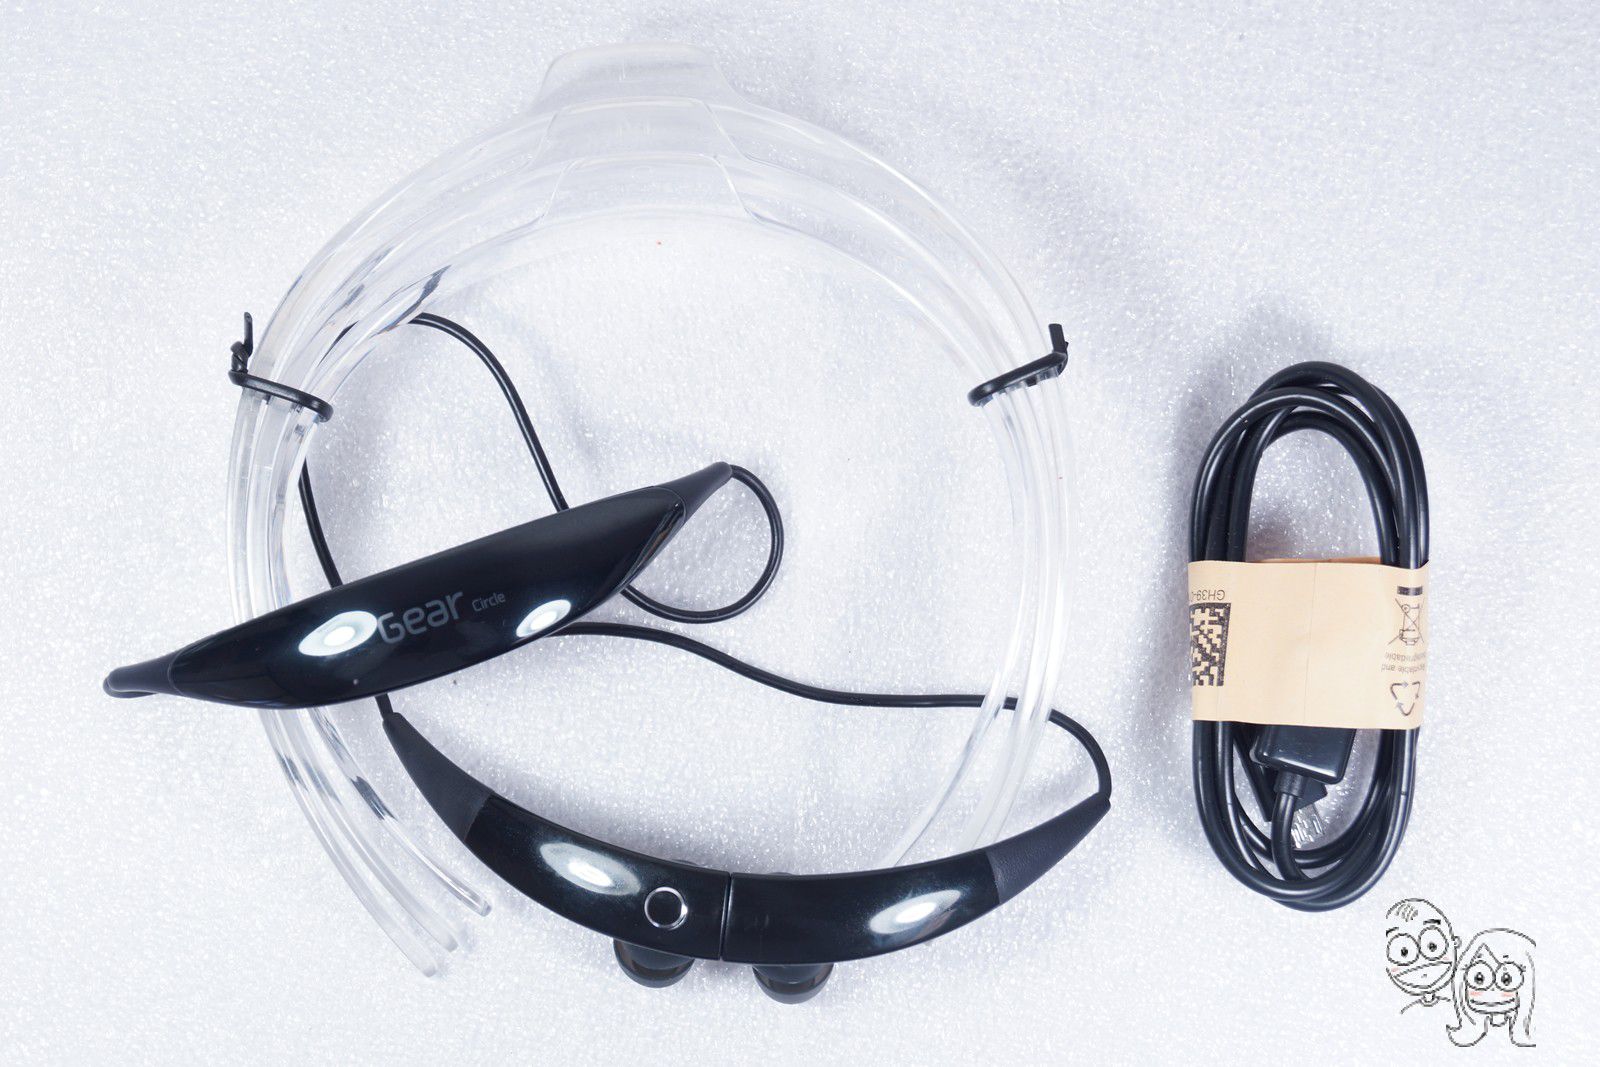 SAMSUNG - Gear Circle Wireless Headphones - SM-R130NZKSXAR (Black) GENUINE